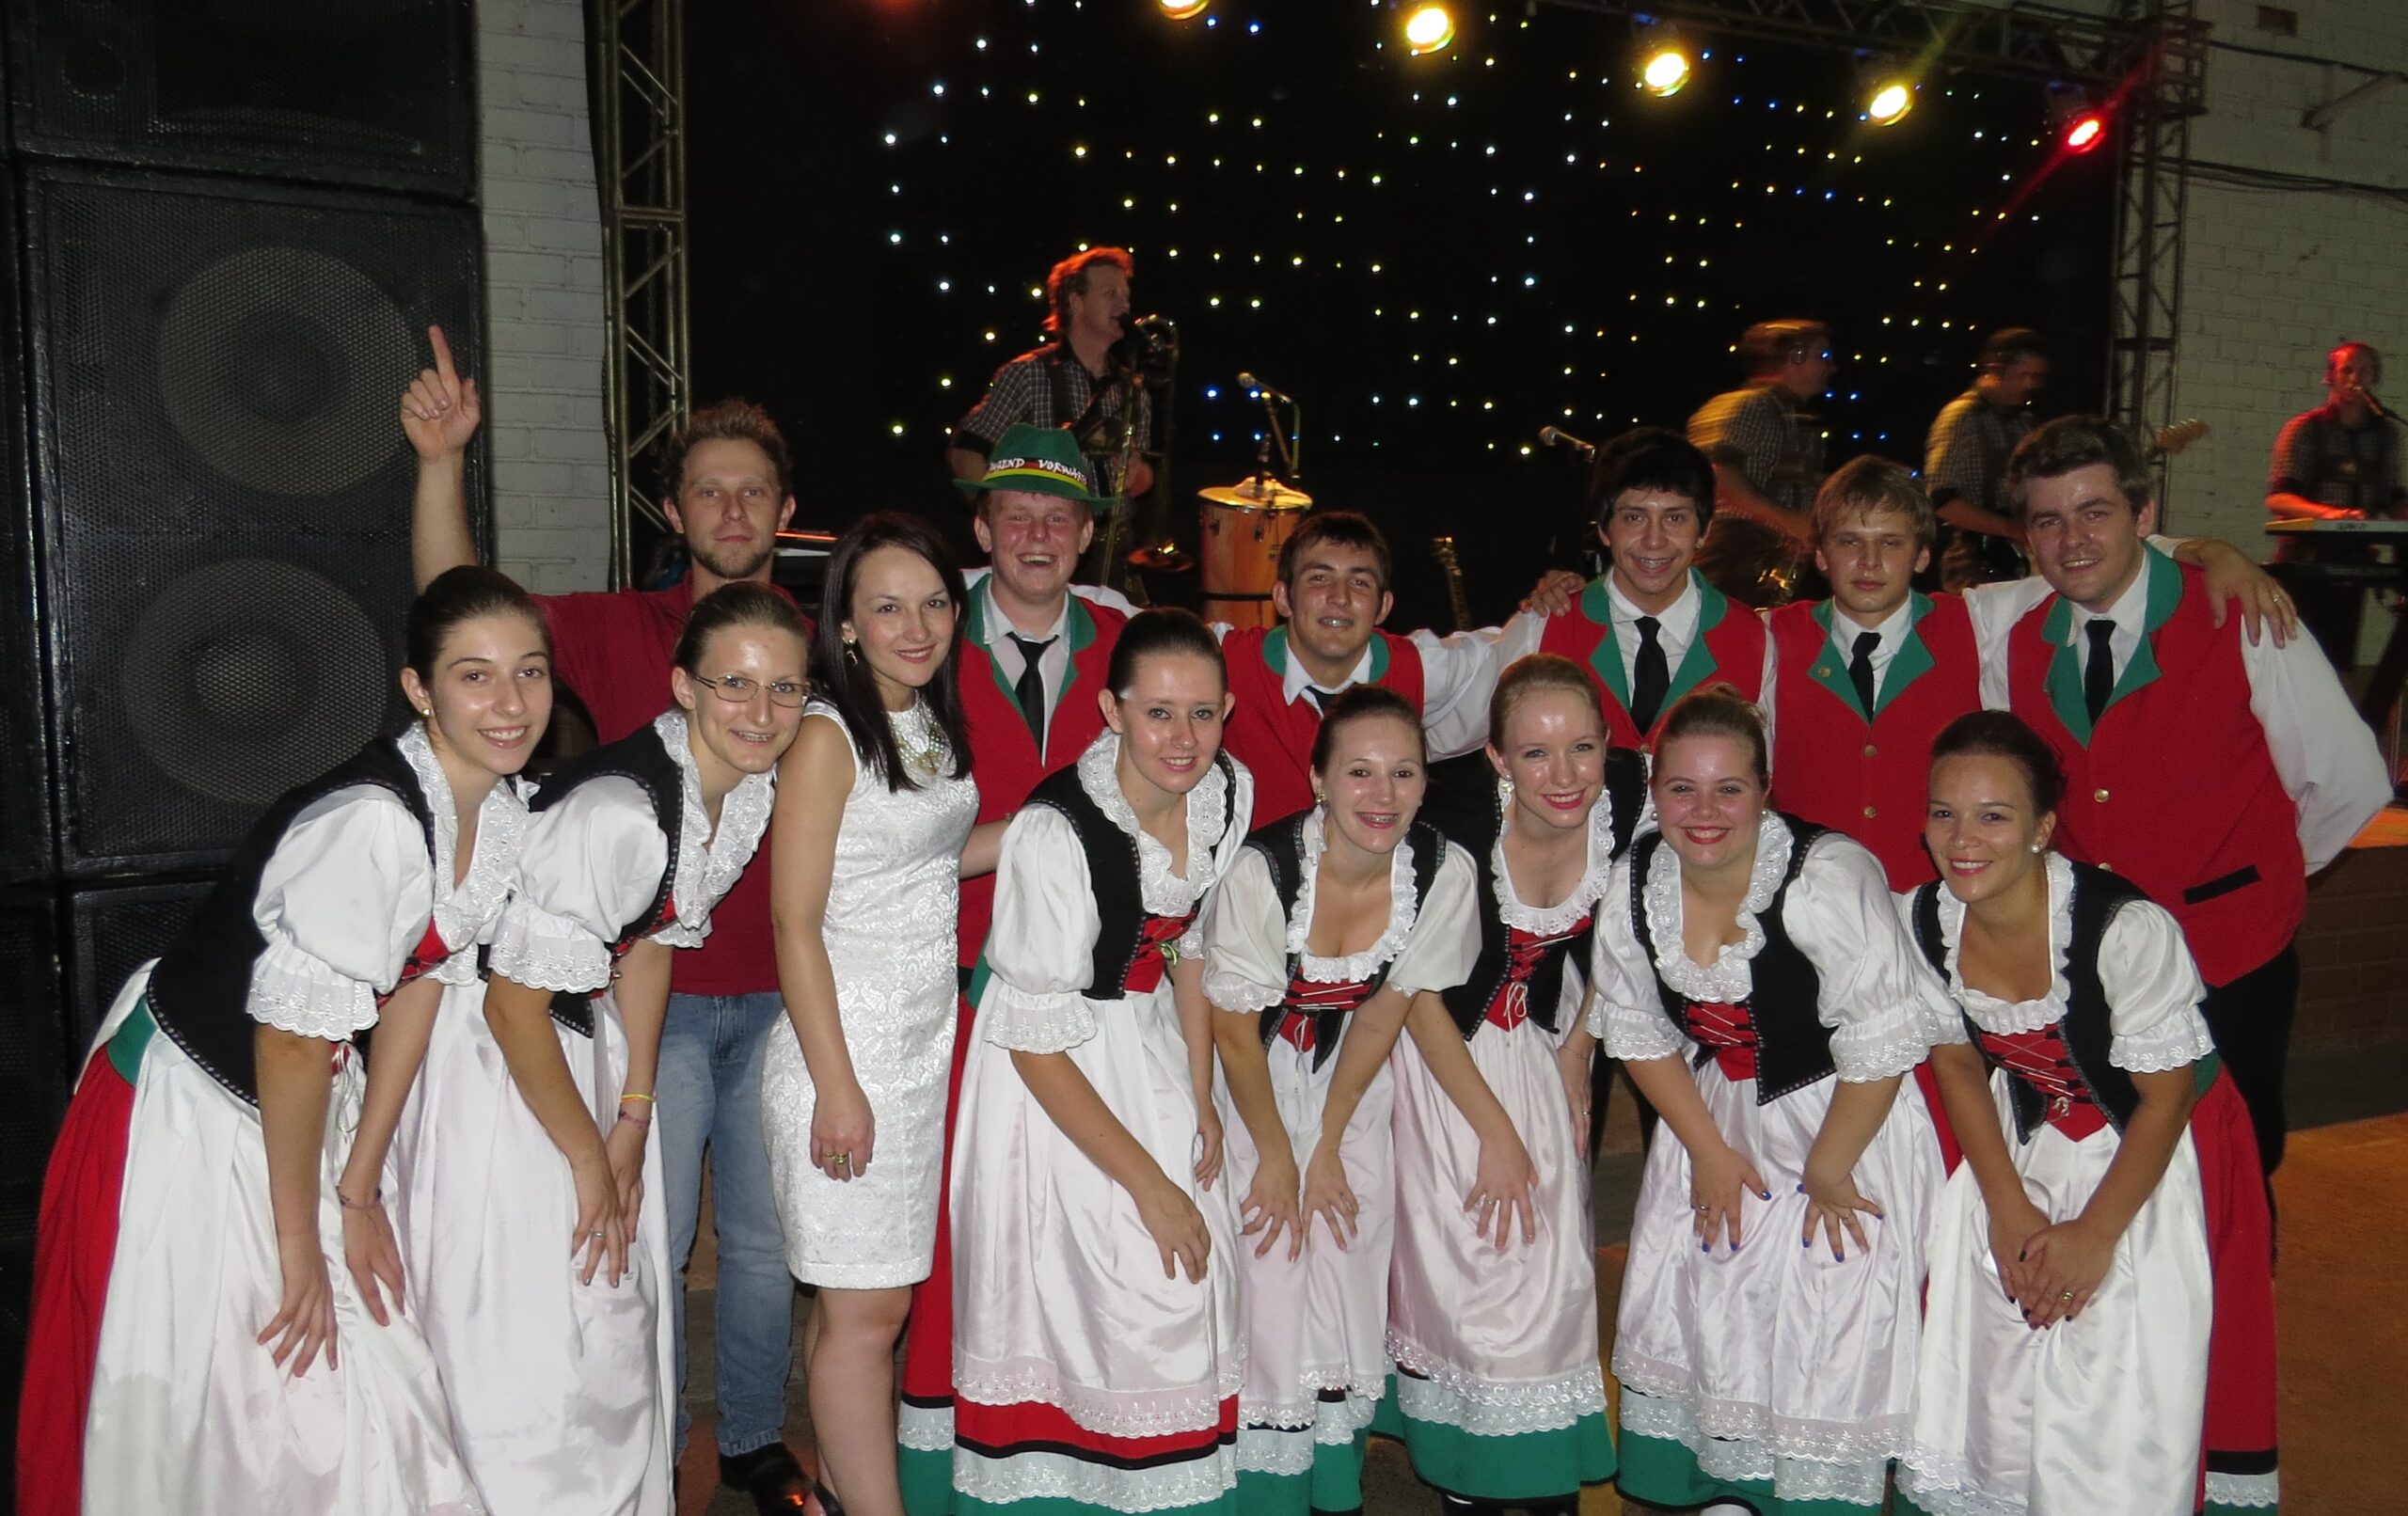 Grupo Jugend Vorwärts esteve em Chapecó participando do evento cultural